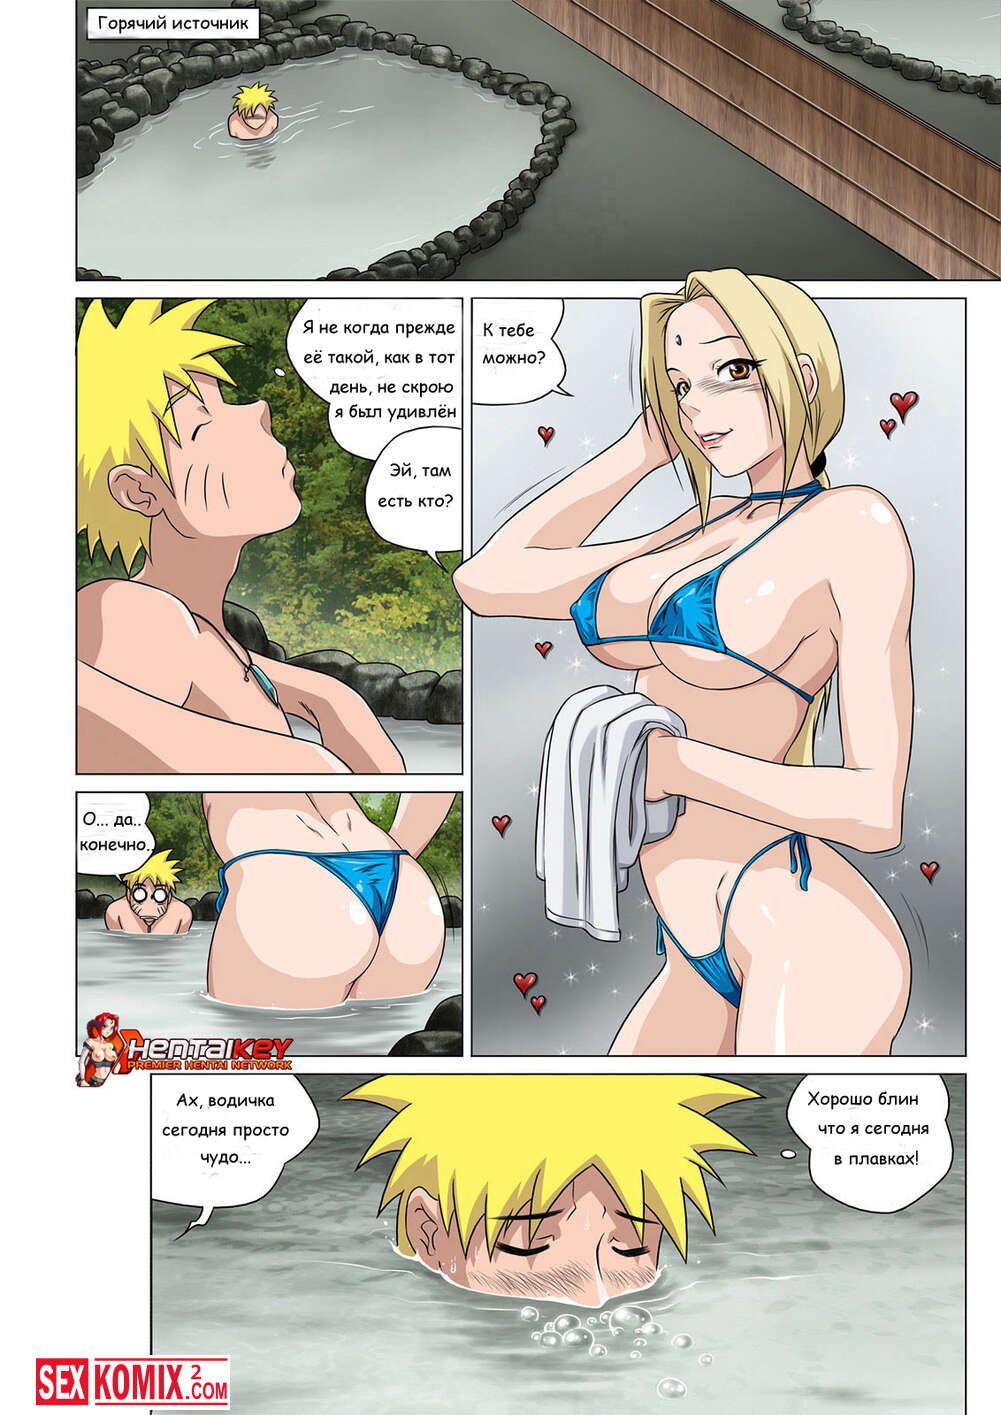 Хентай порно комиксы Наруто - личная шлюха Цунаде